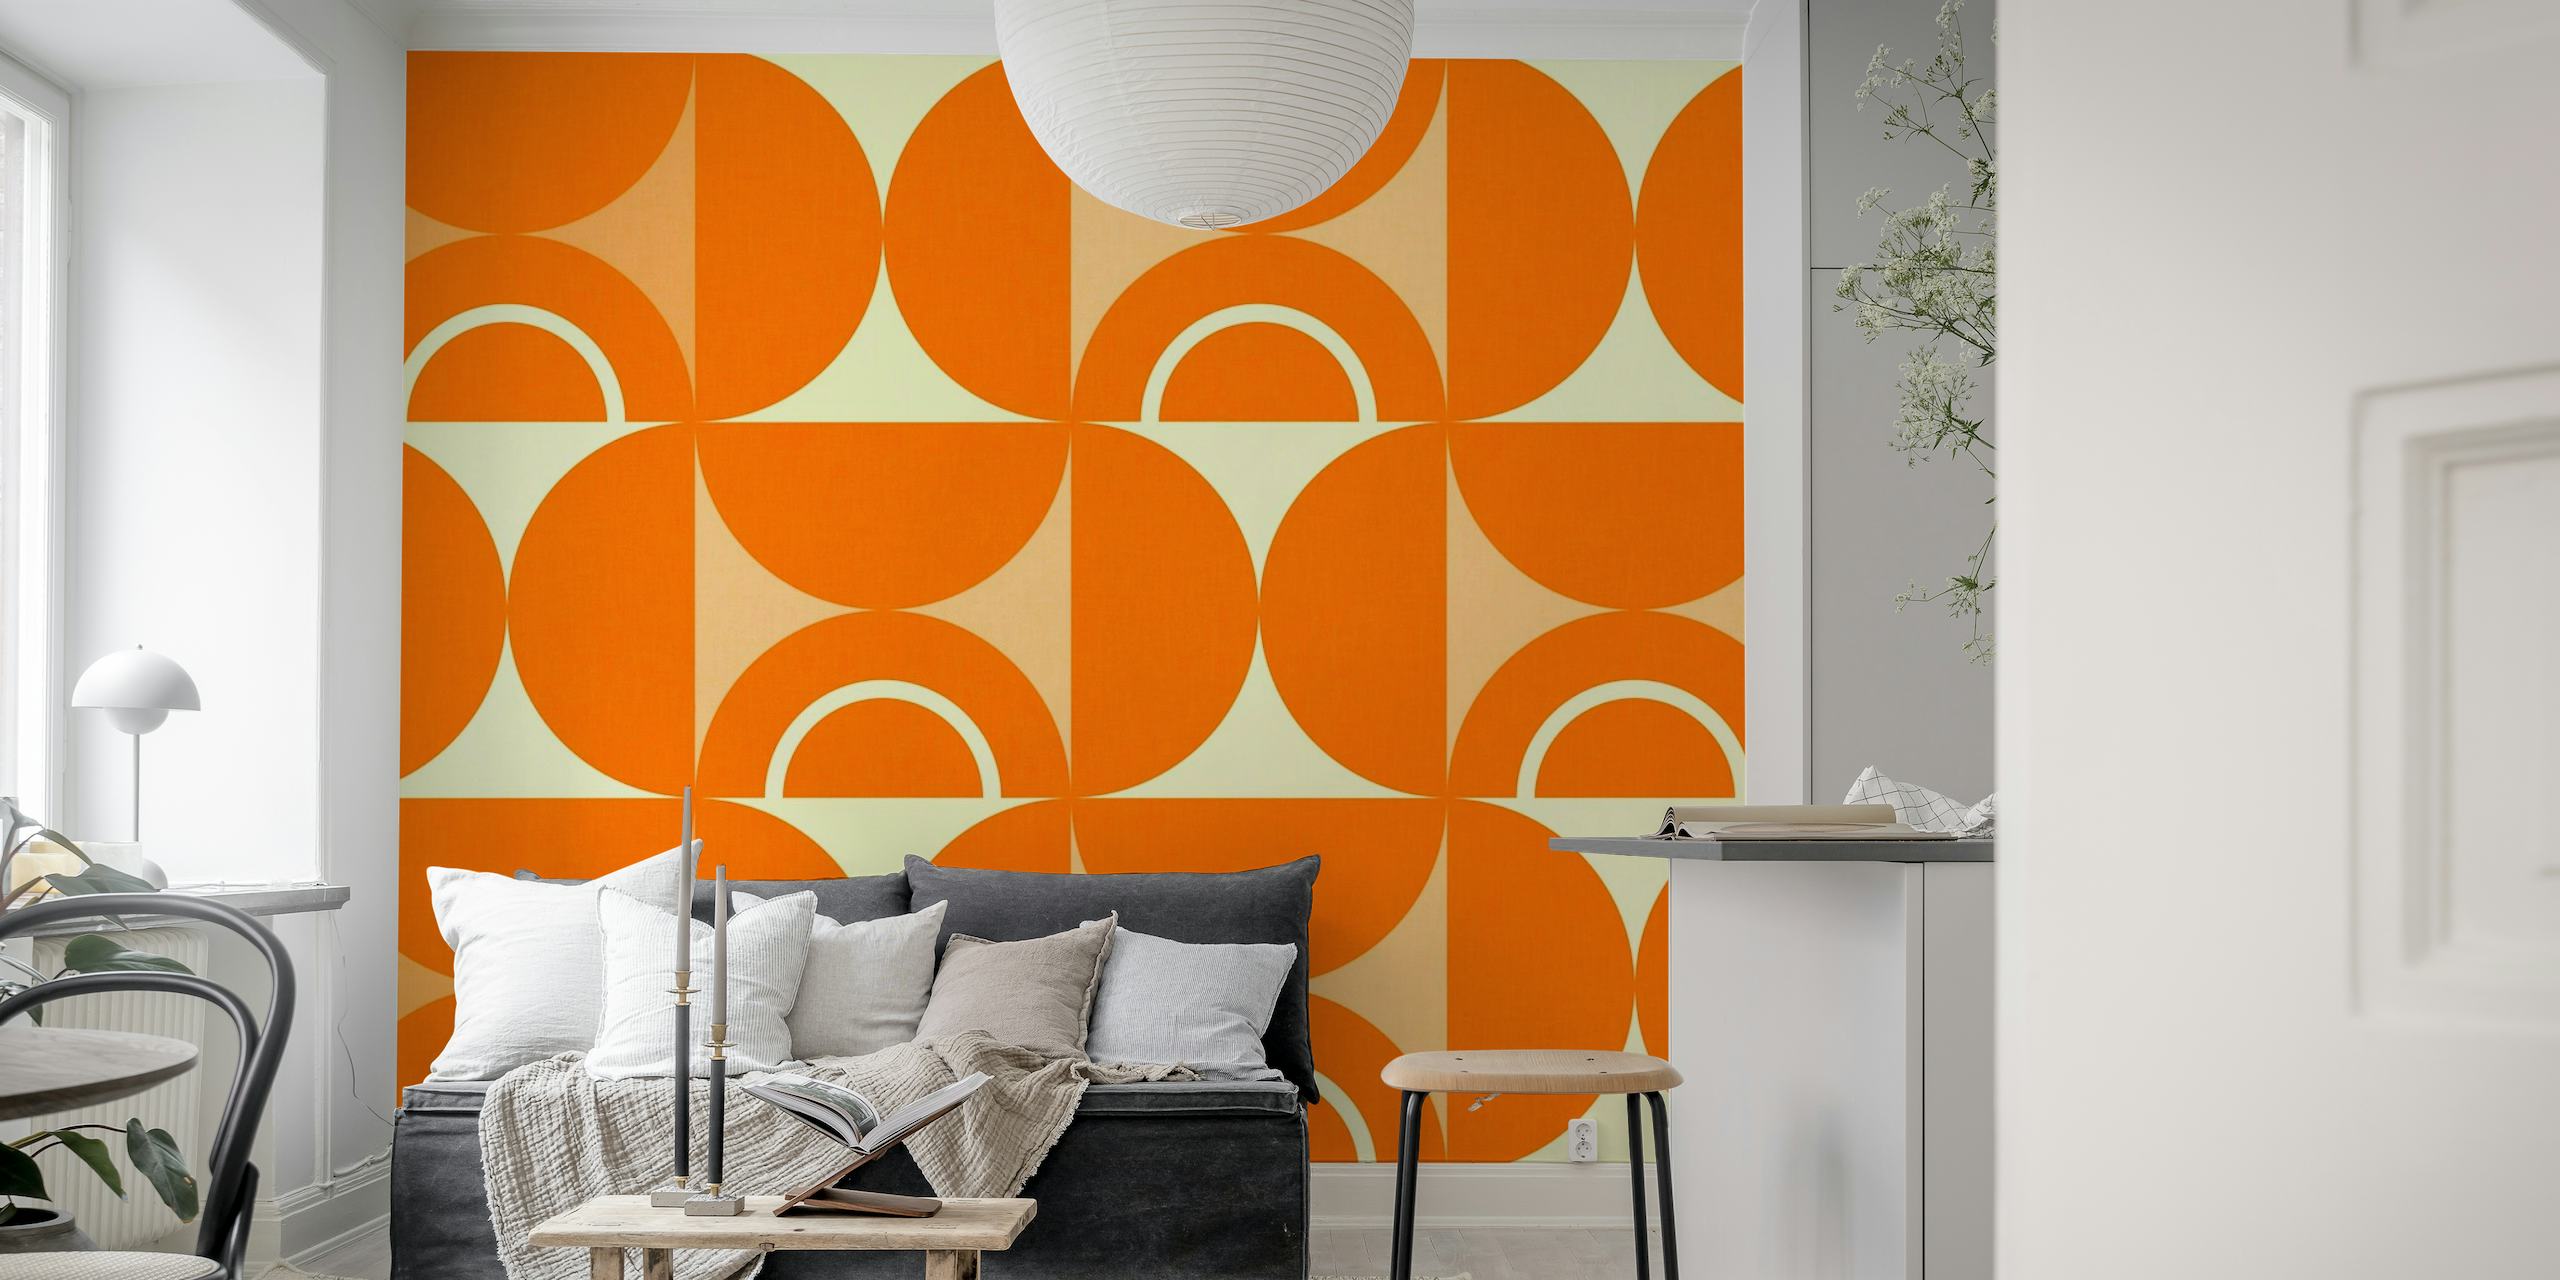 Vuosisadan puolivälin moderni geometrinen kuvio oranssina ja valkoisena seinämaalaukseen